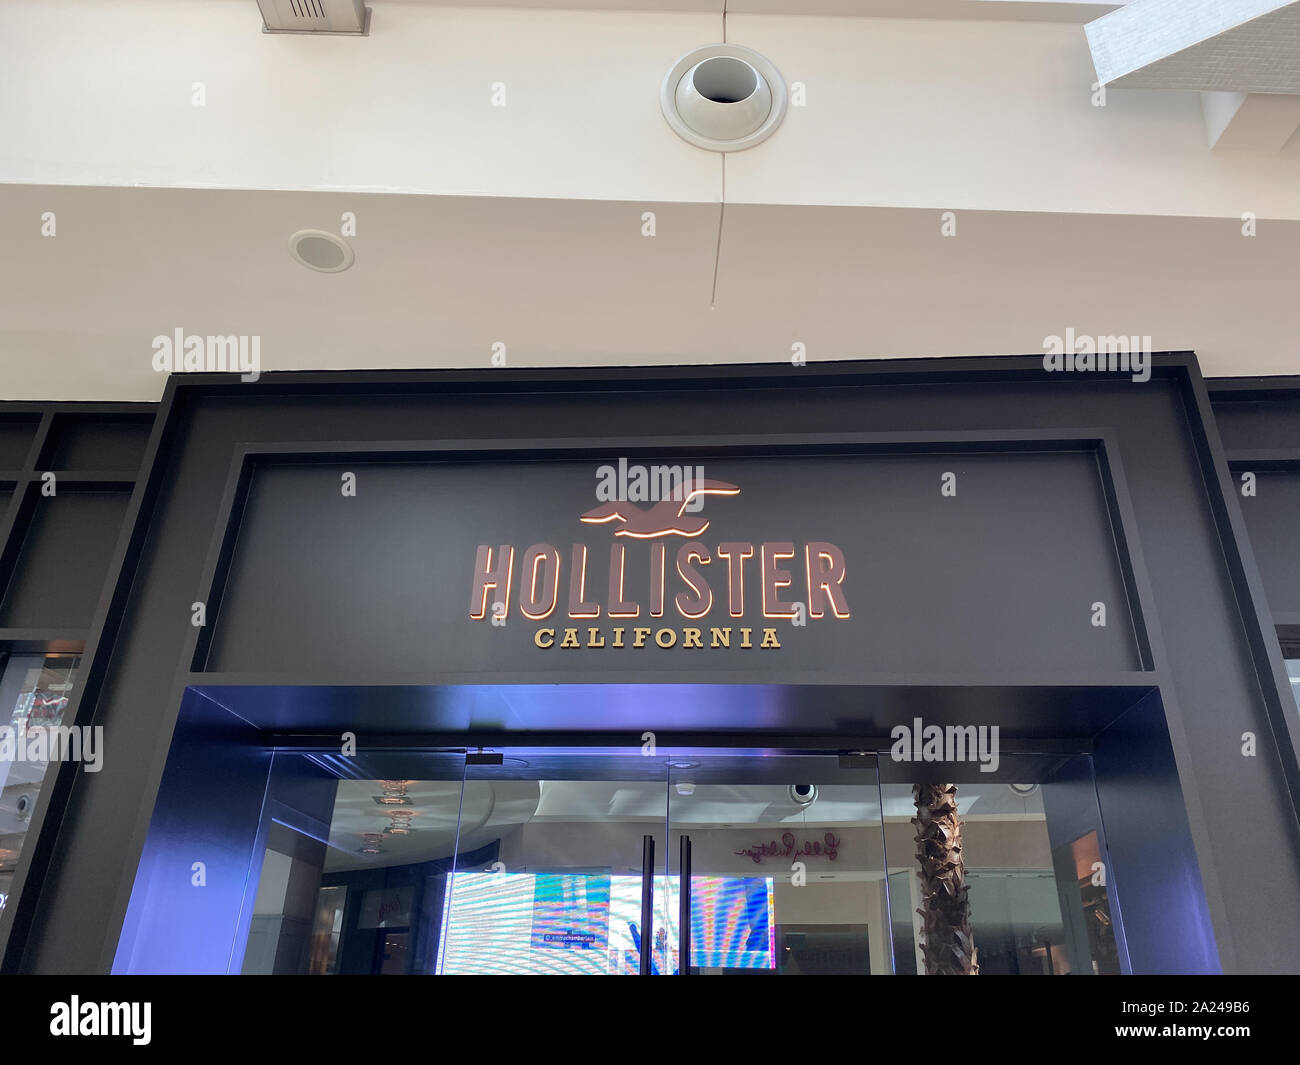 Orlando,FL/USA-9/30/19: Hollister ropa tienda en un centro comercial.  Hollister es una marca del estilo de vida estadounidense dirigido a los  adolescentes Fotografía de stock - Alamy